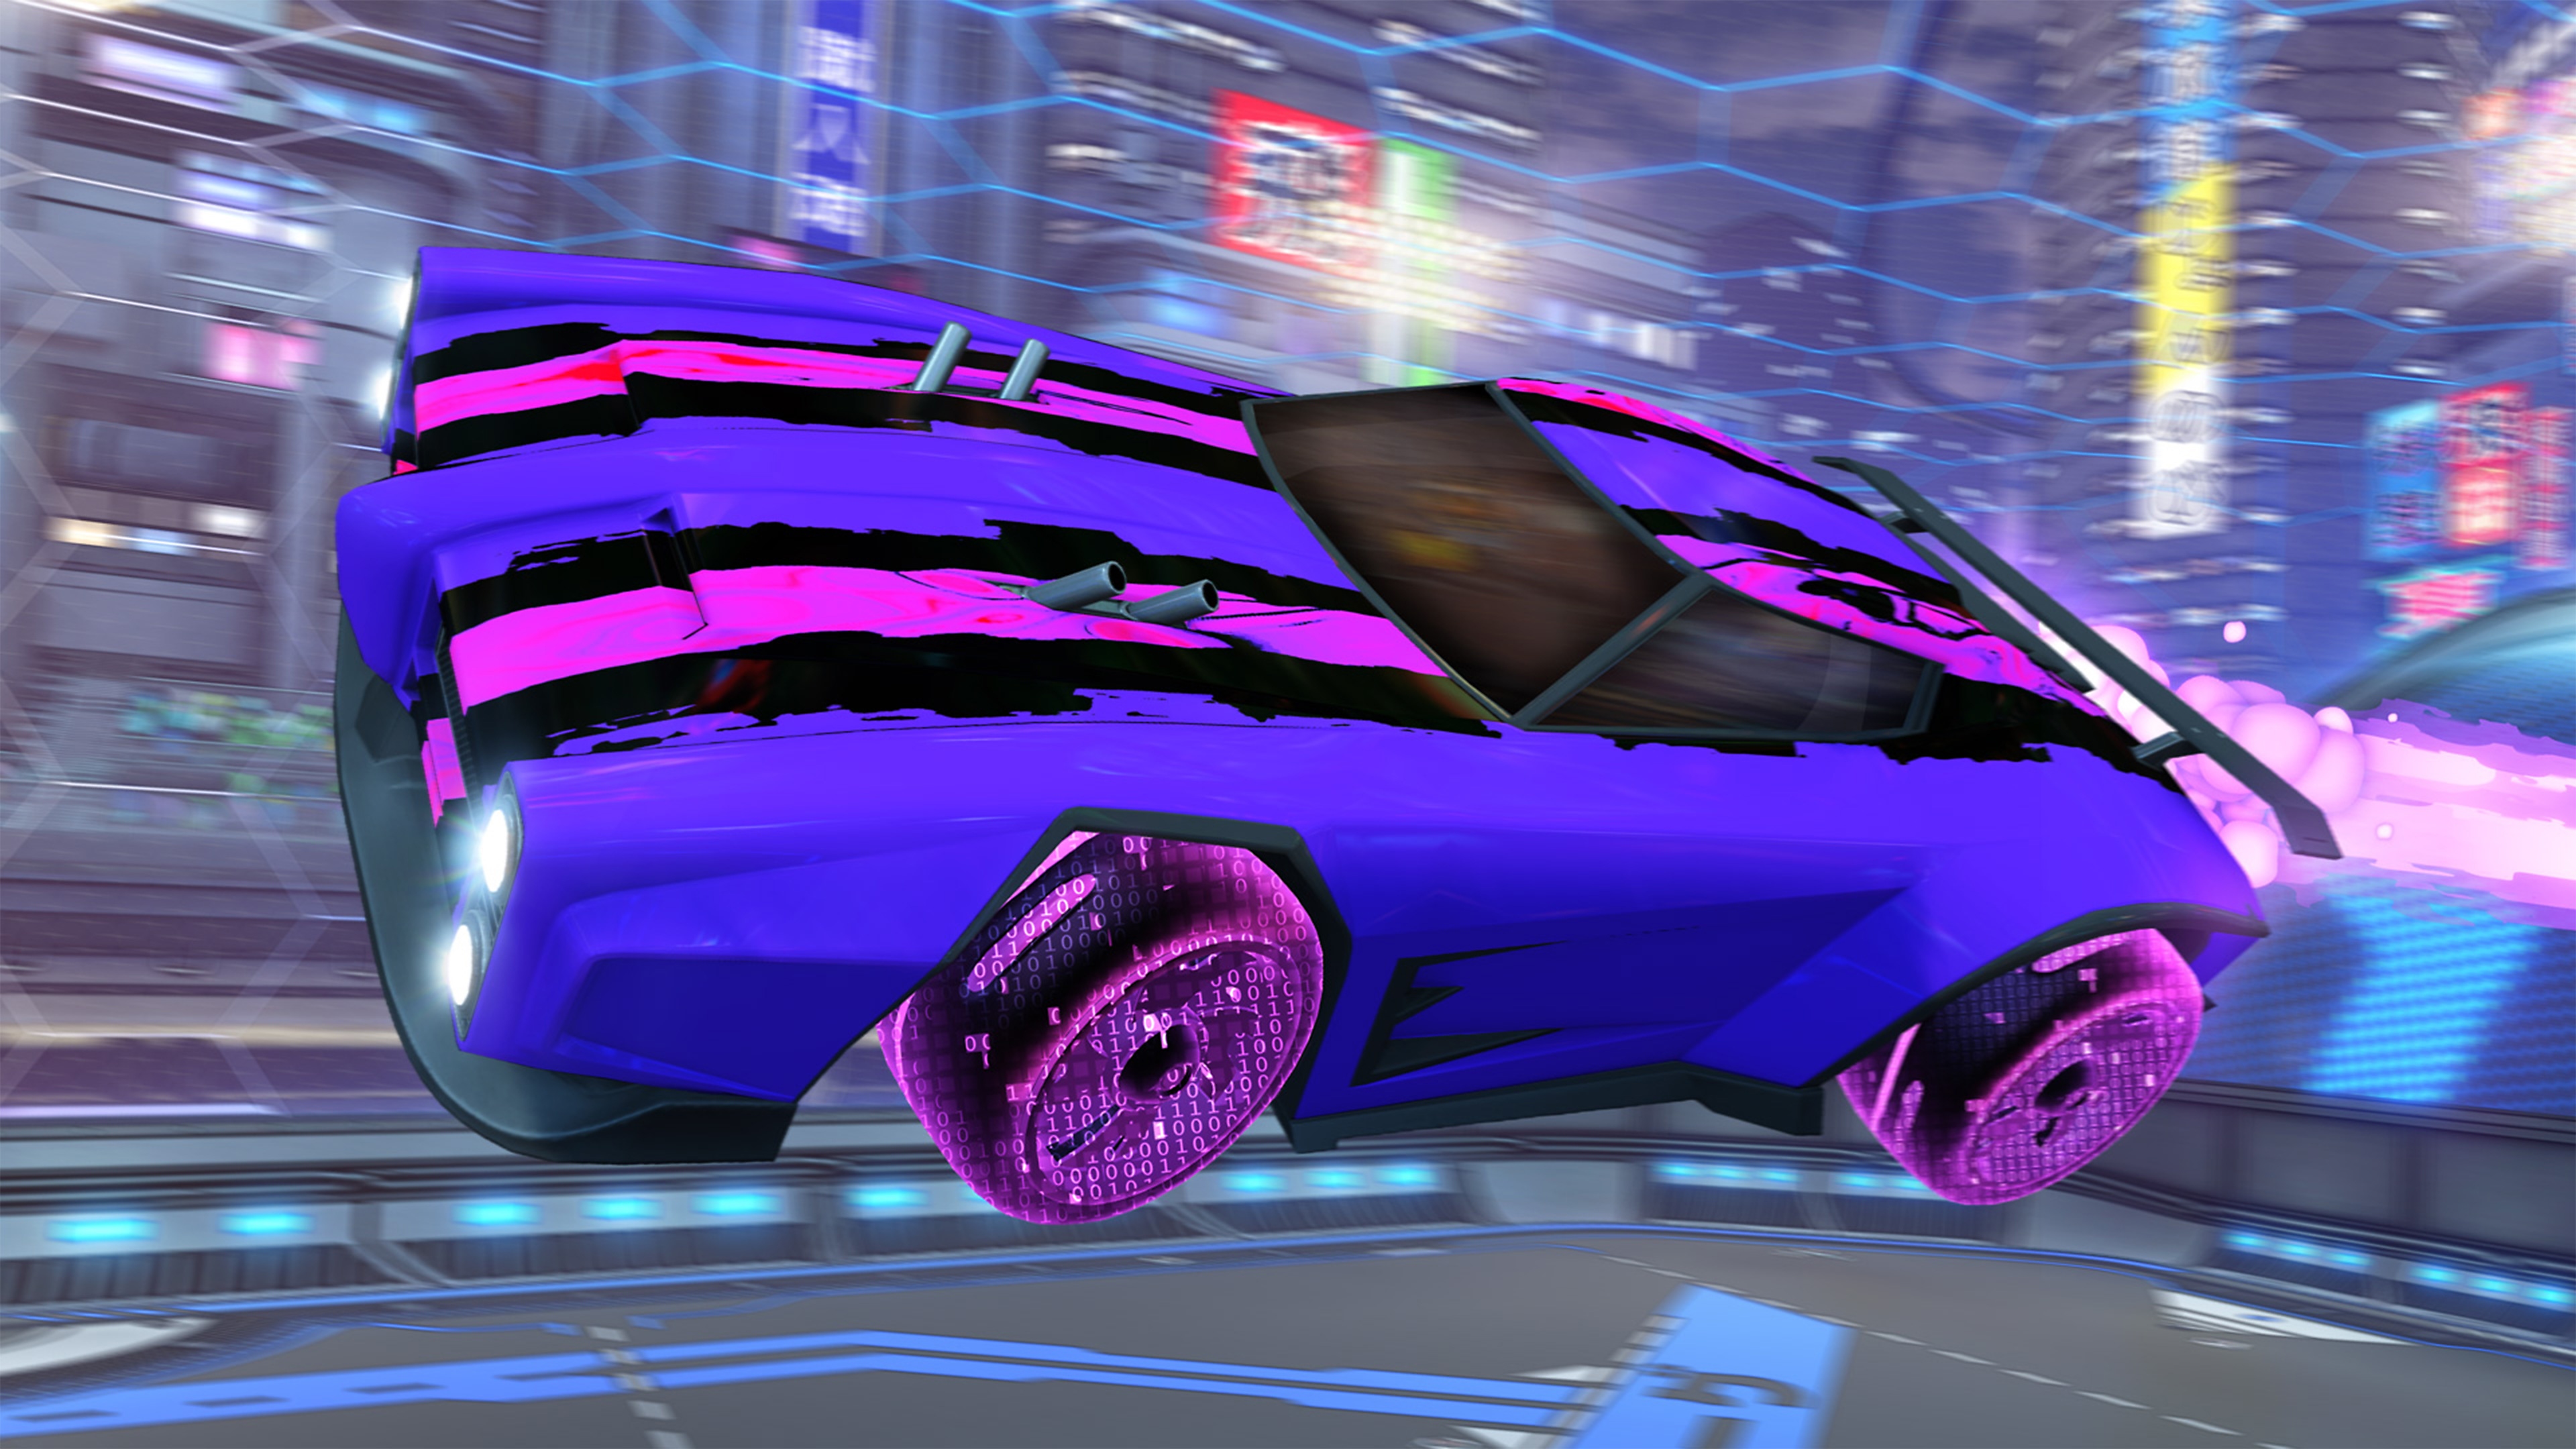 Rocket League-skærmbillede, der viser en lilla bil med pink og sorte fartstriber